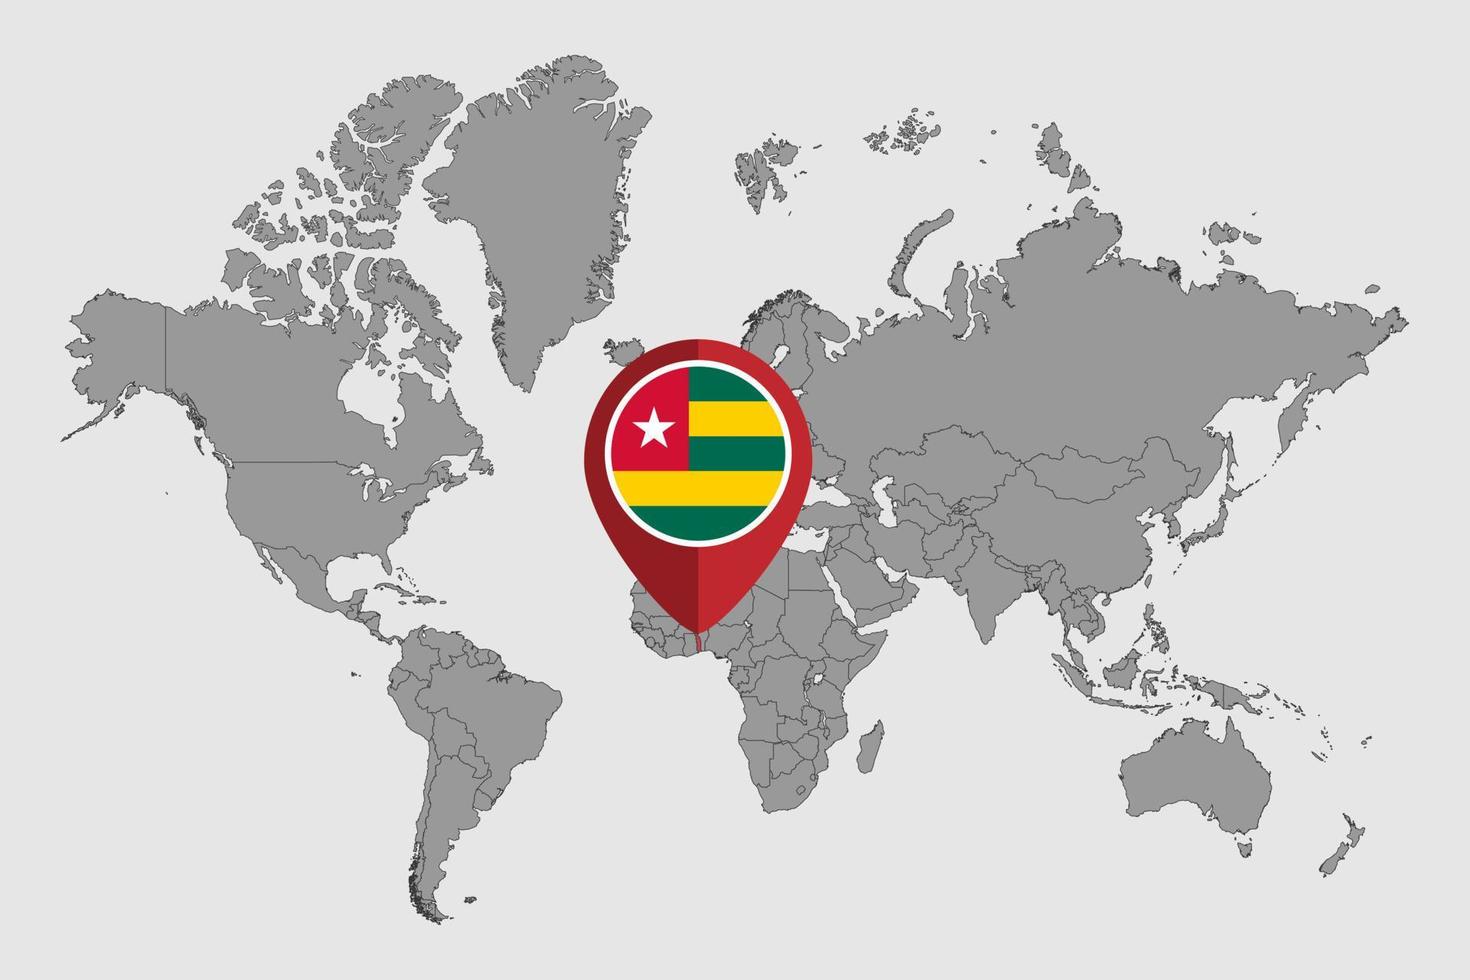 pin mapa con bandera de togo en el mapa mundial. ilustración vectorial vector